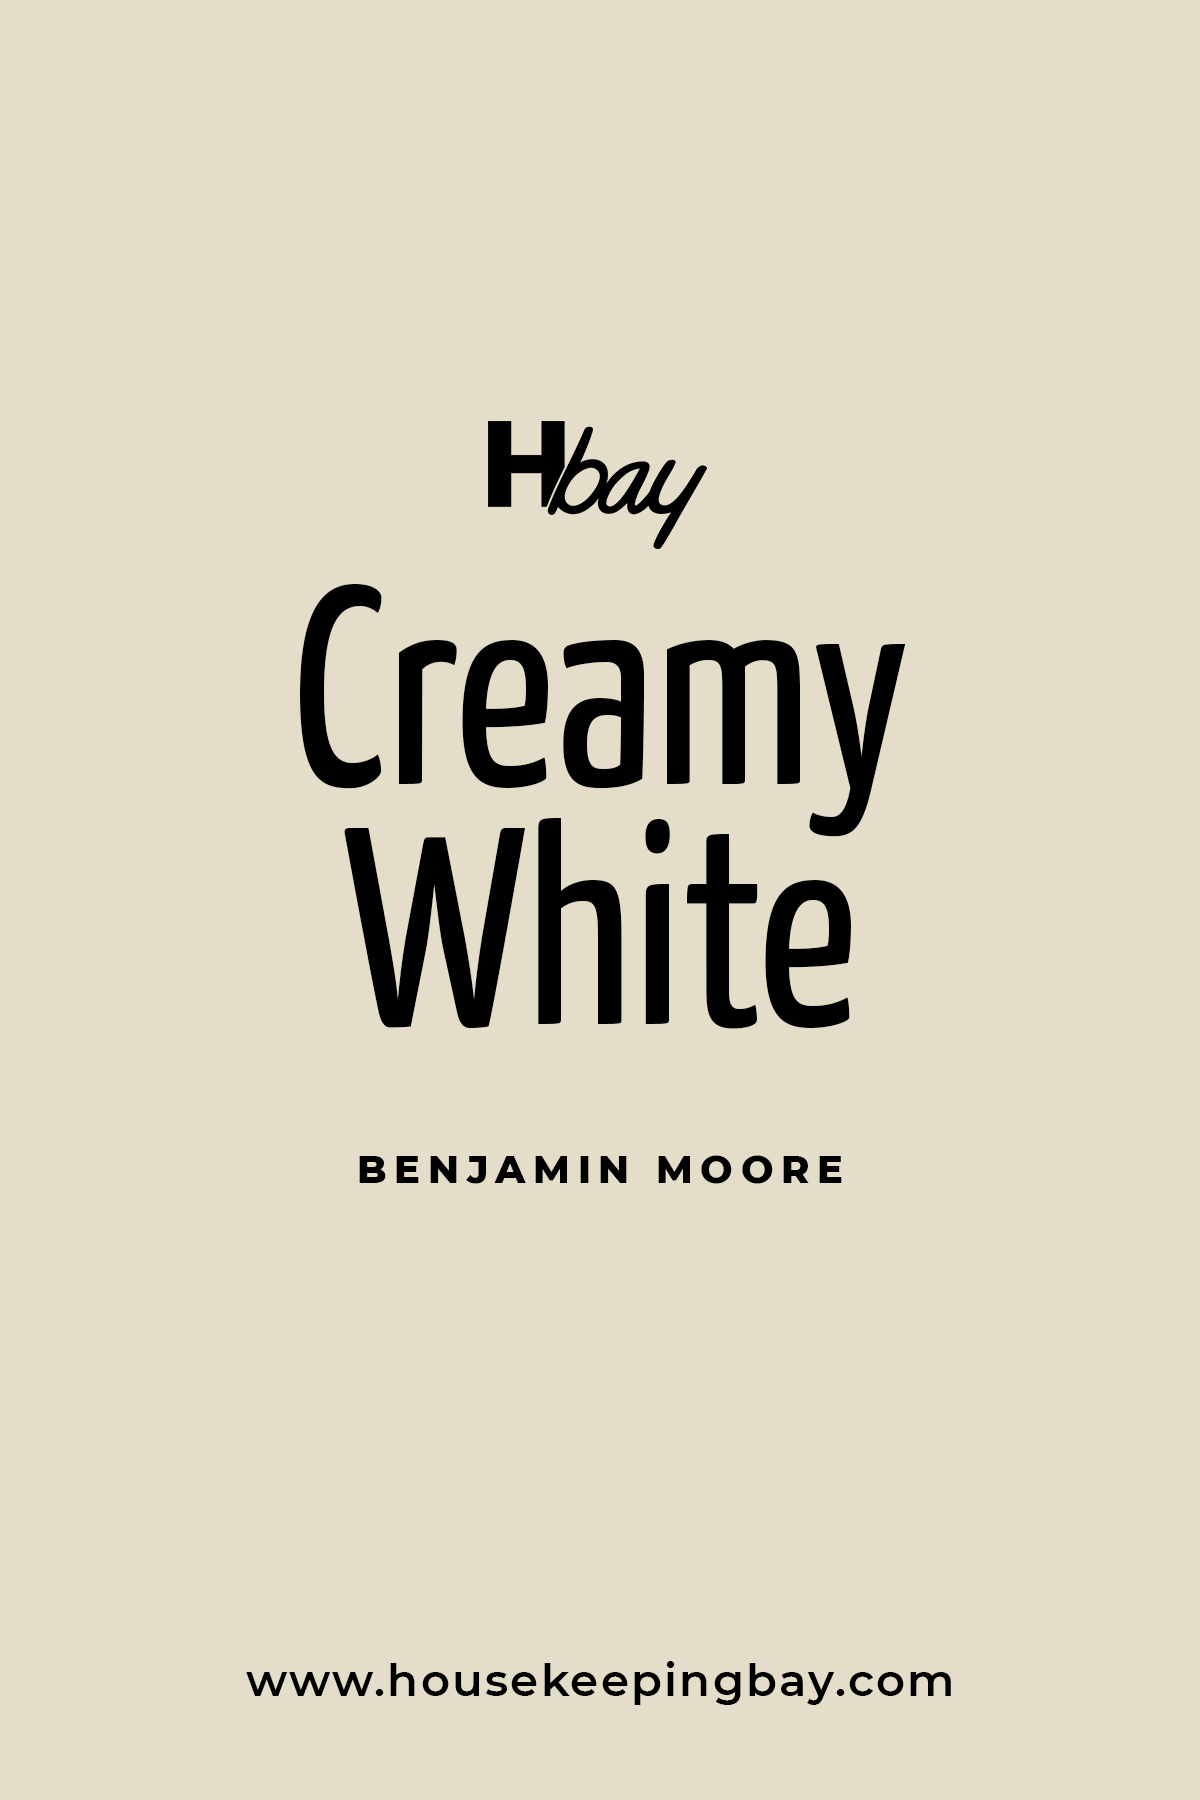 Creamy White